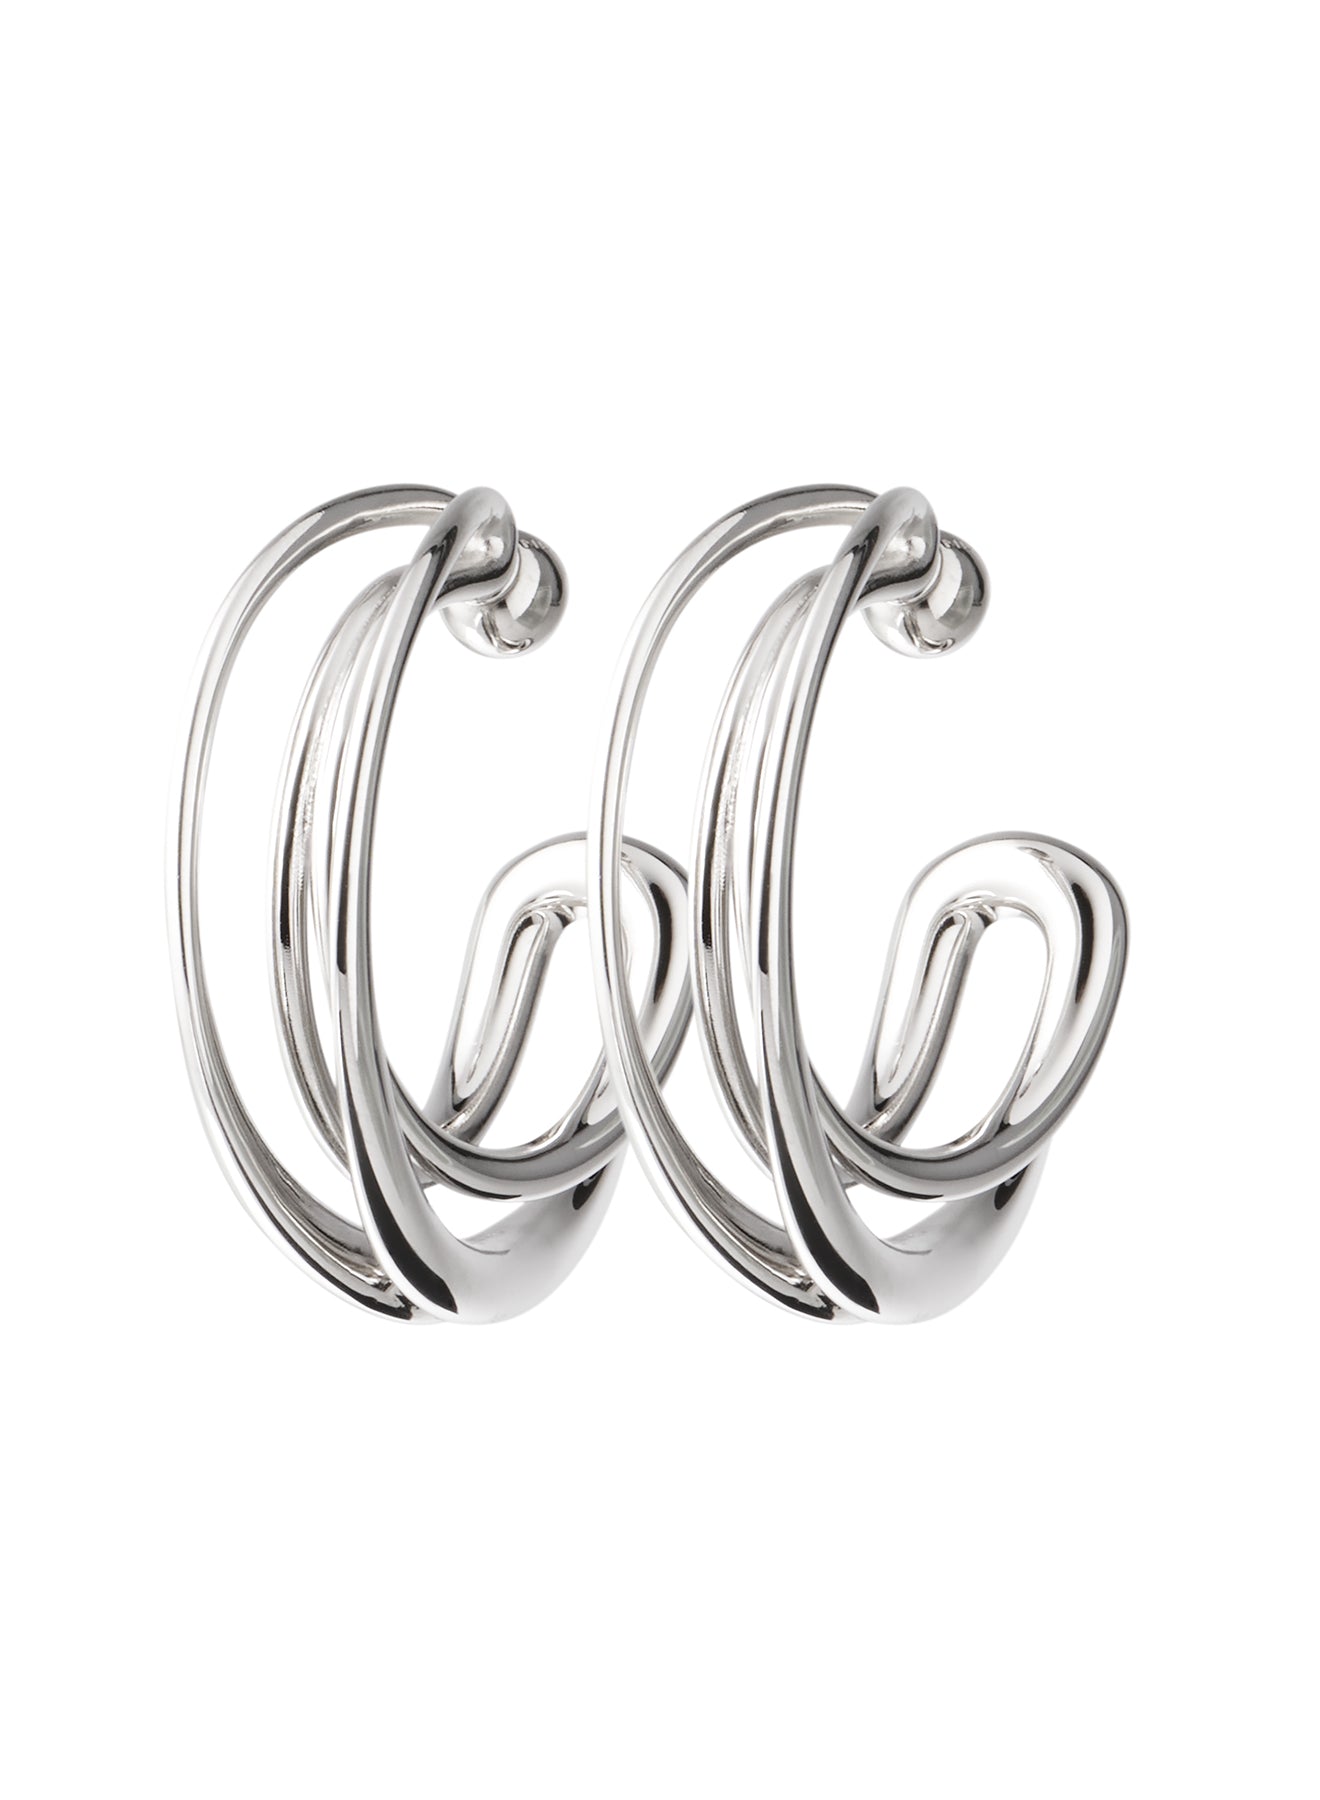 Swirl earrings